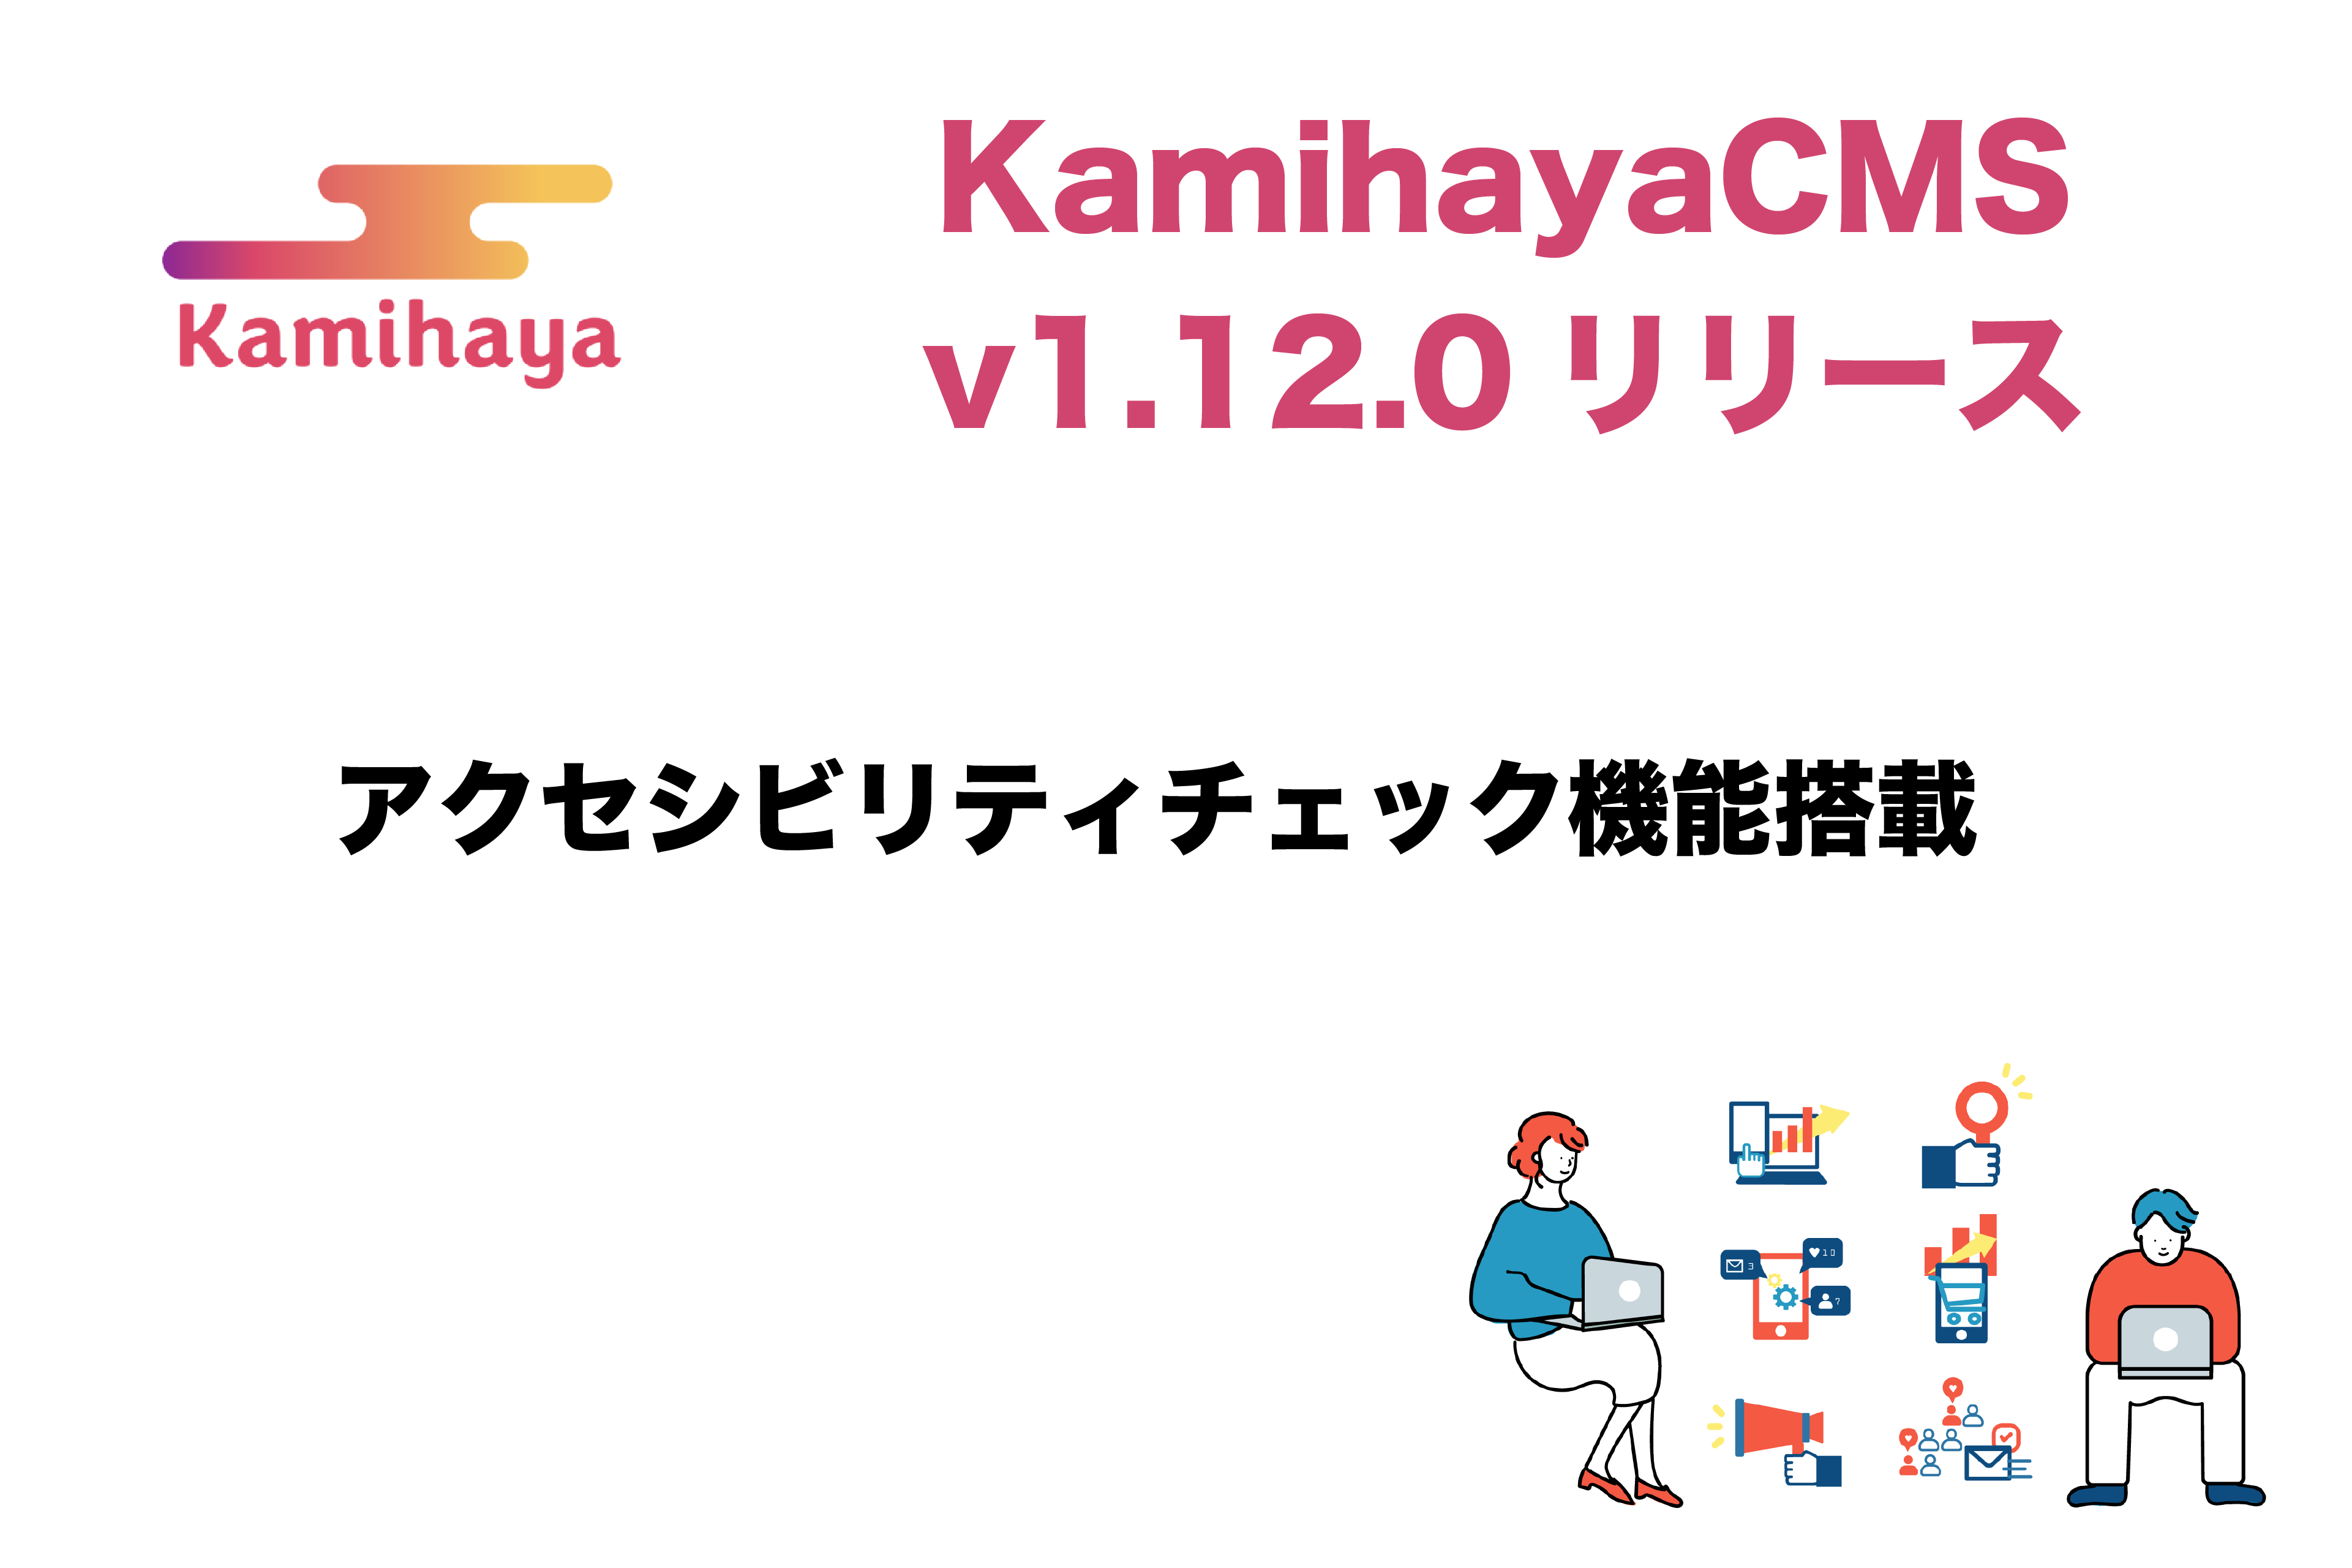 アクセシビリティ対応機能を実装したKamihayaCMS の画像